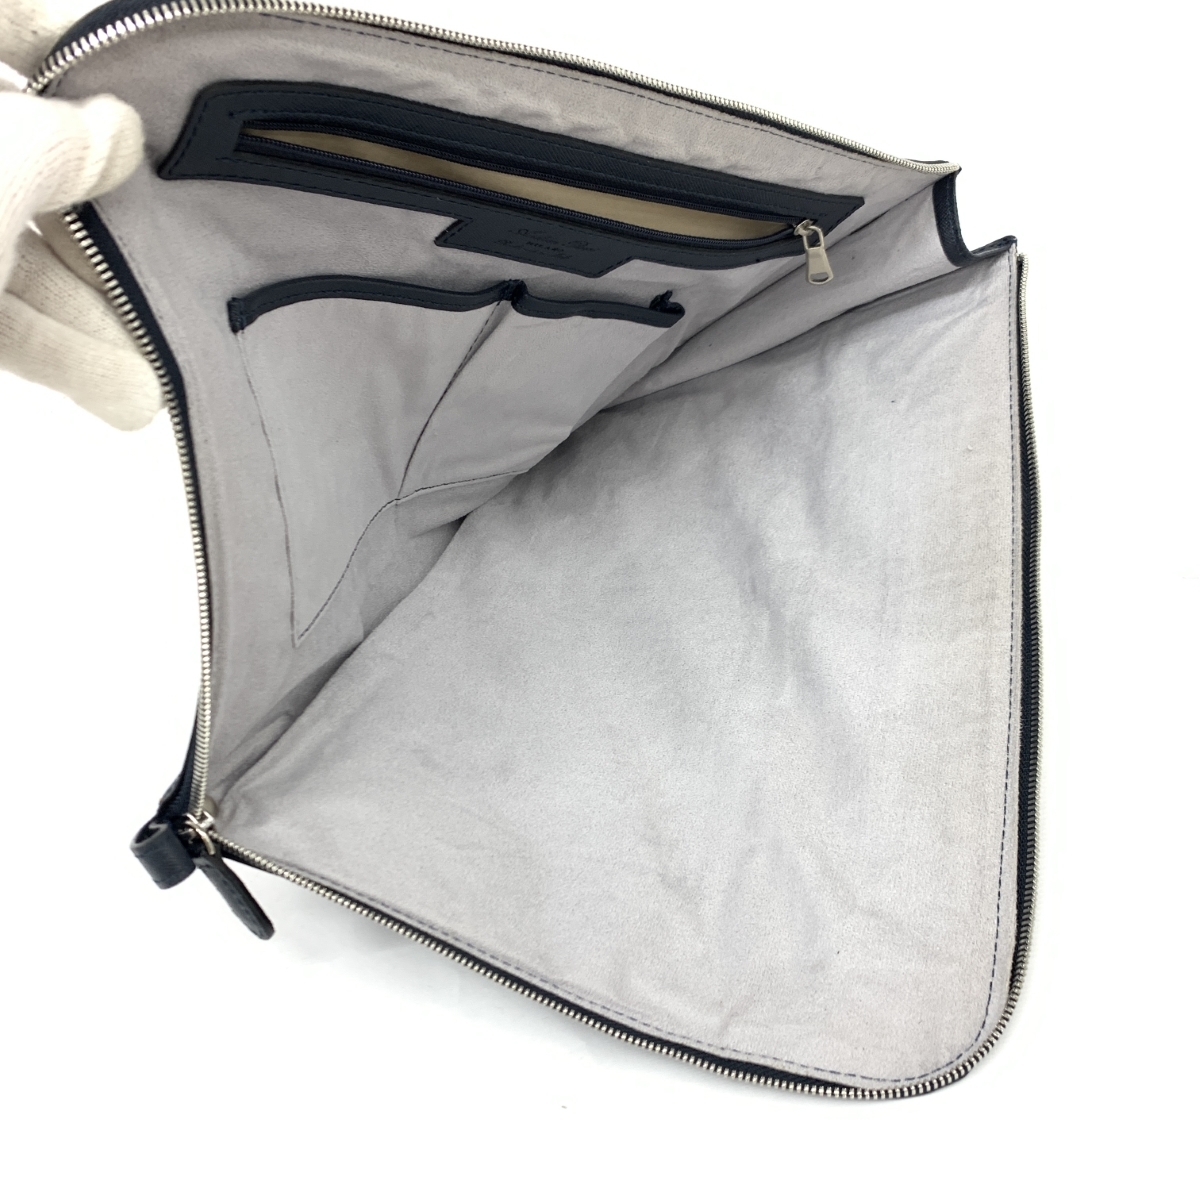 良好◆Andrea Rossi アンドレアロッシ クラッチバッグ◆ ネイビー サフィアーノレザー L字ファスナー メンズ セカンドバッグ bag 鞄の画像4